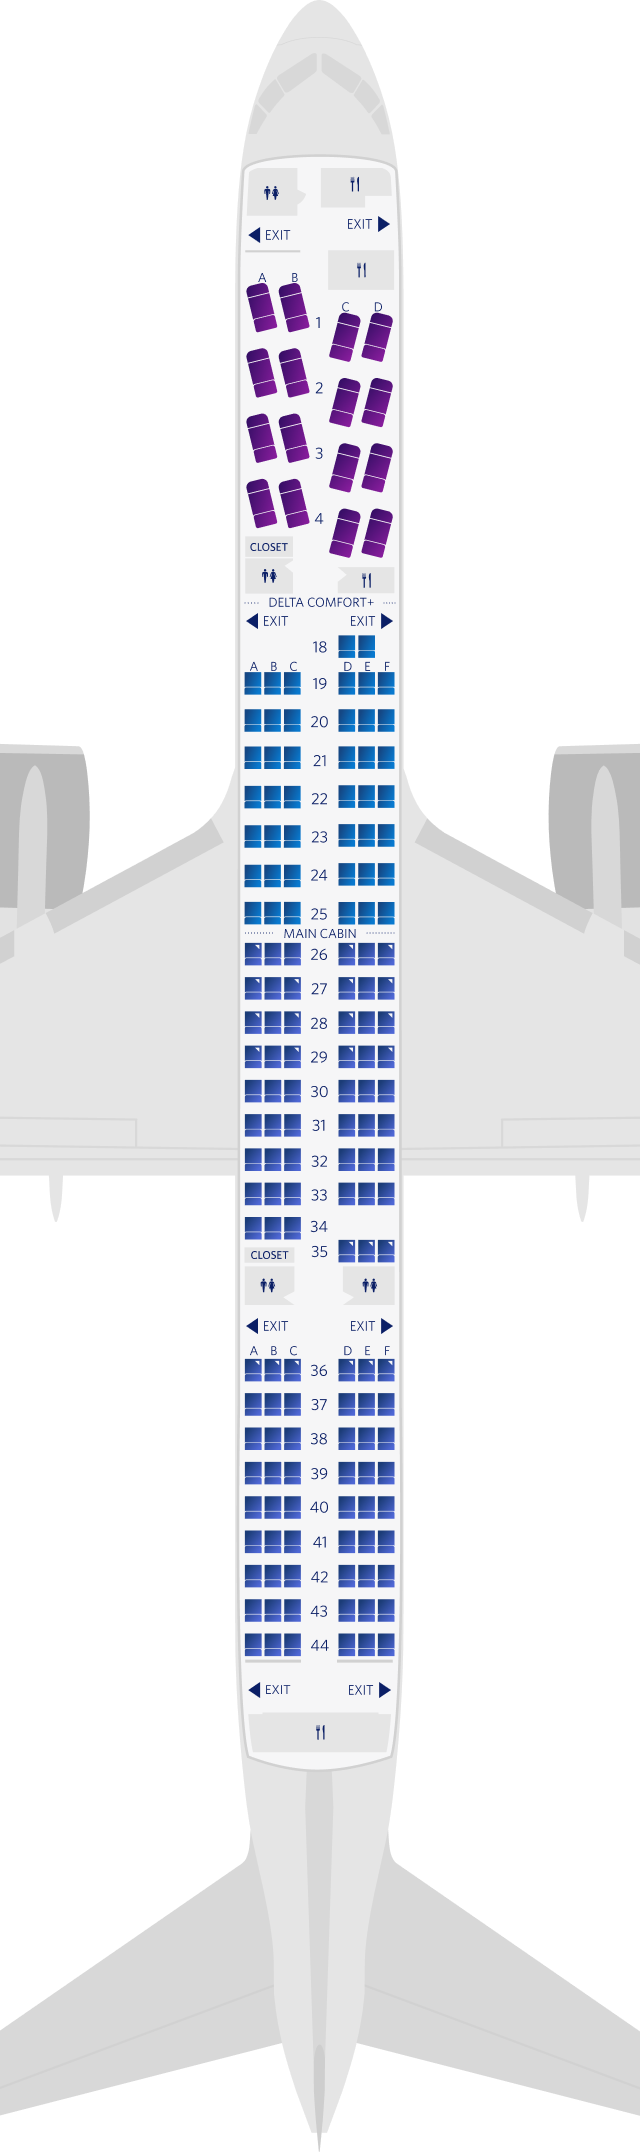 Configuration des sièges du Boeing 757-200-75S